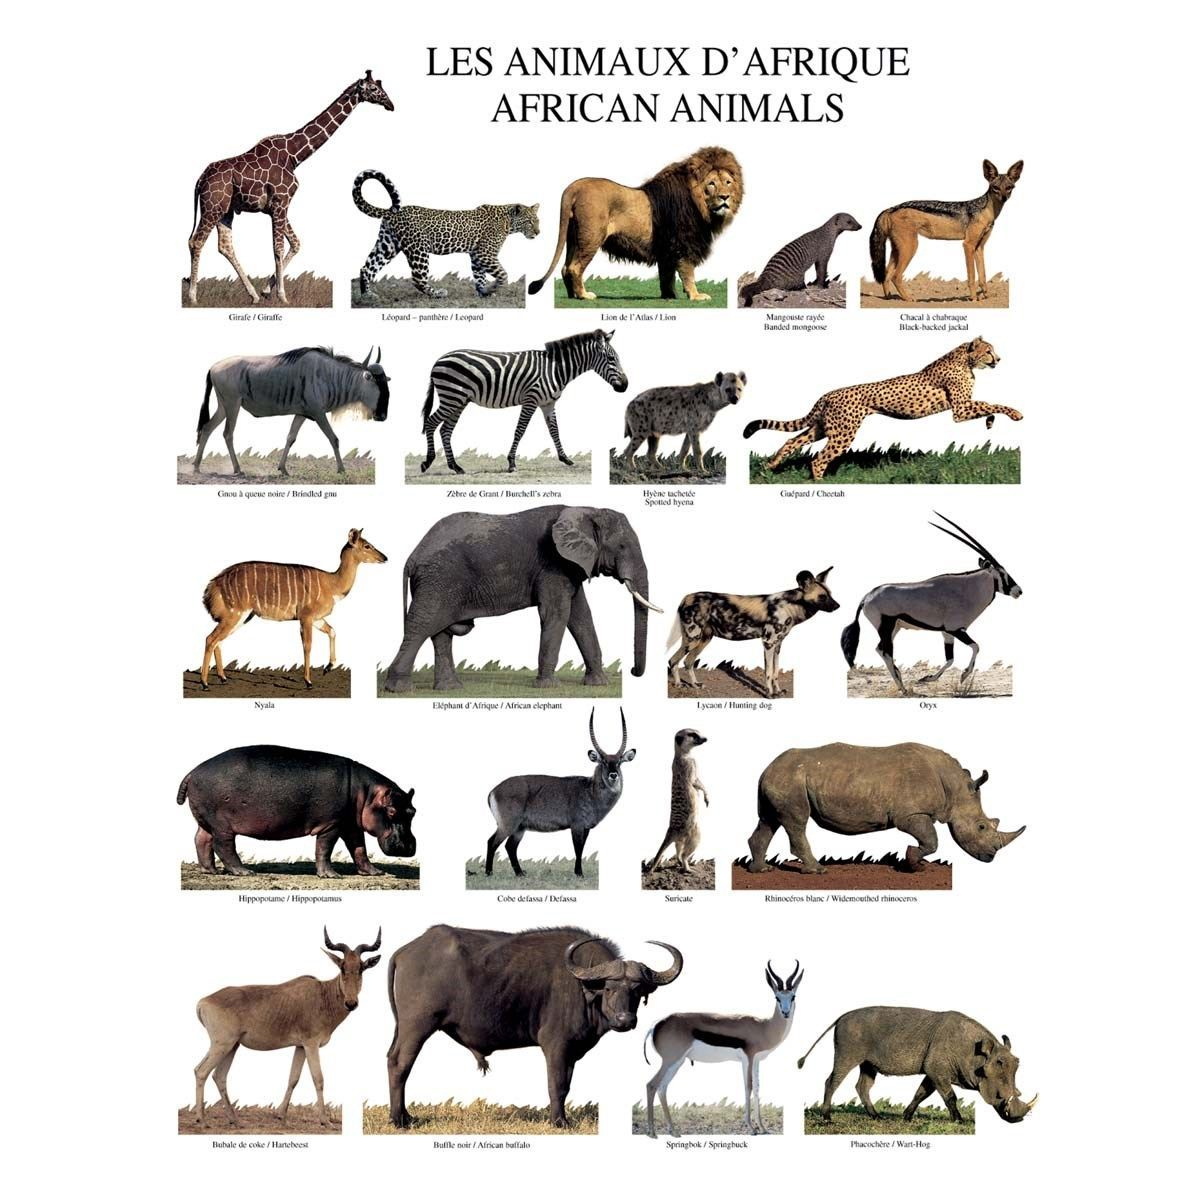 Poster Mural Affiche Les Animaux D Afrique - 40X50Cm concernant Les Animaux De L Afrique